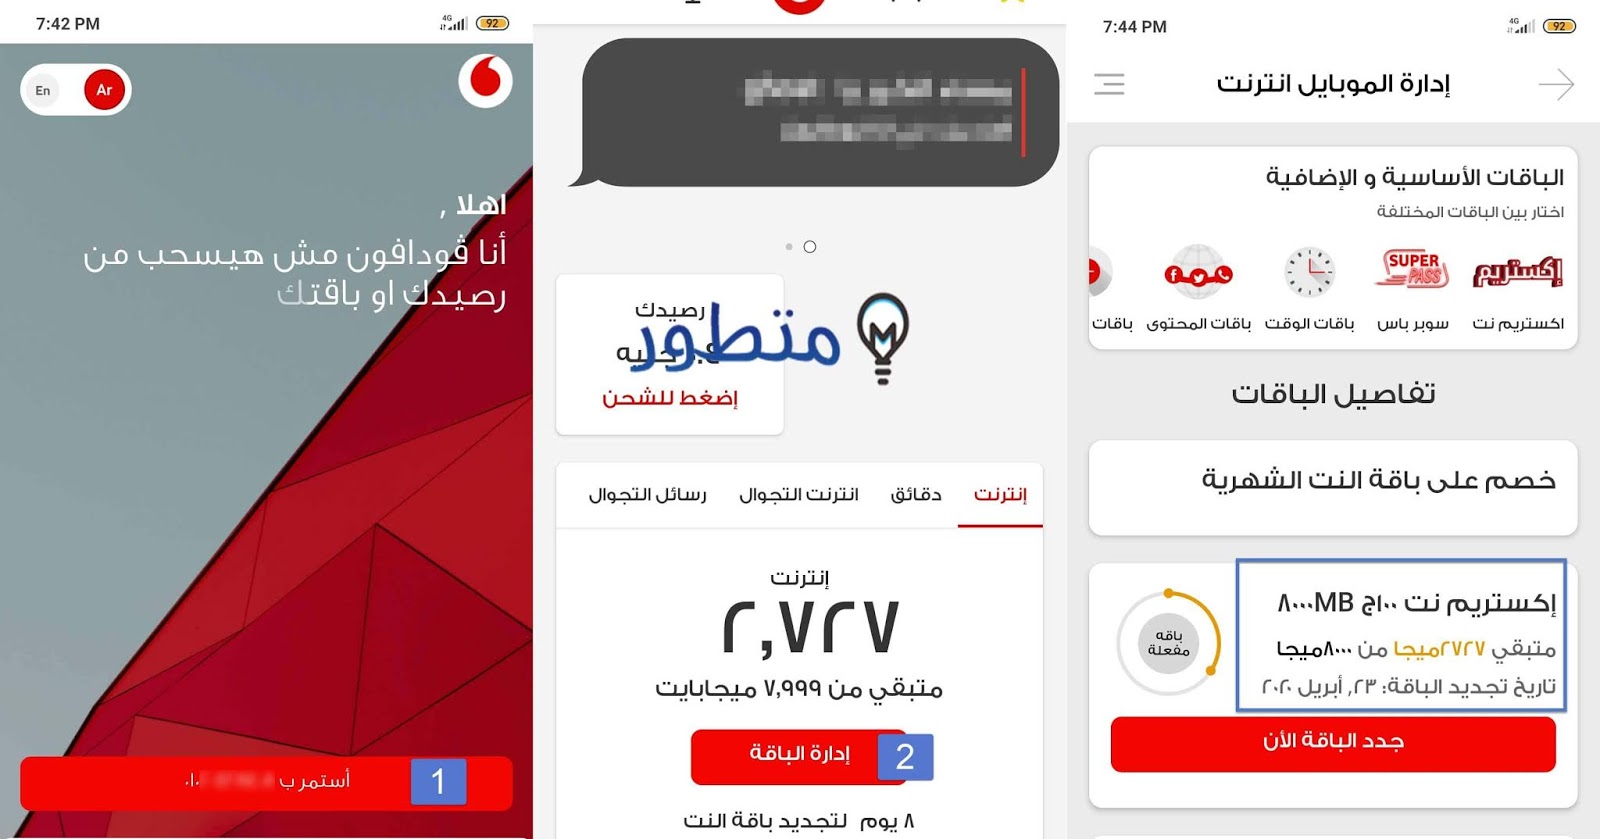 Kuziva iyo Vodafone package